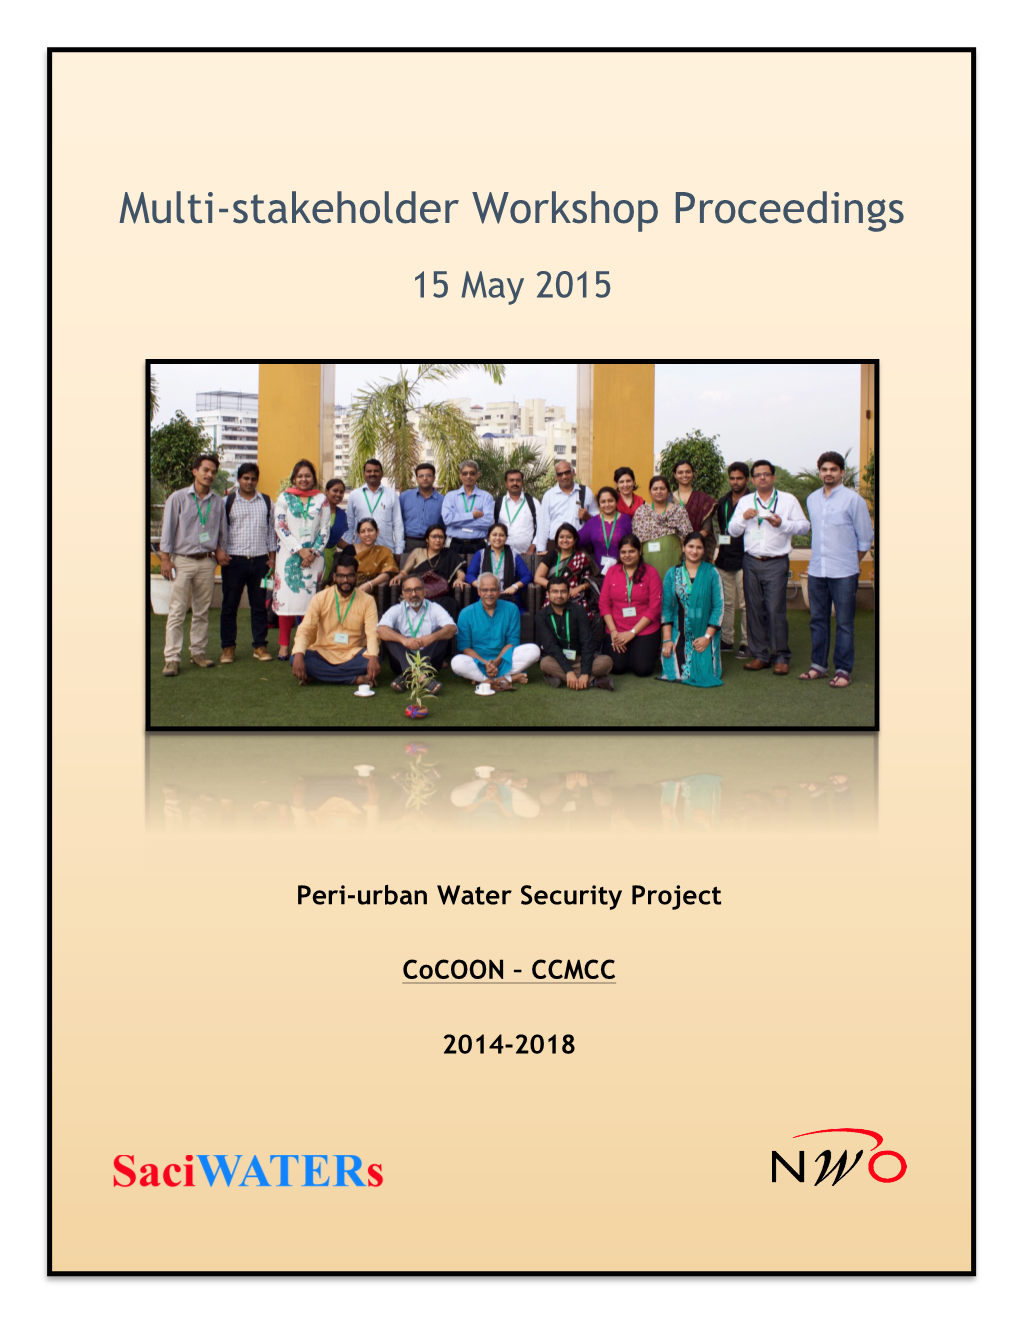 Multi-Stakeholder Workshop Proceedings